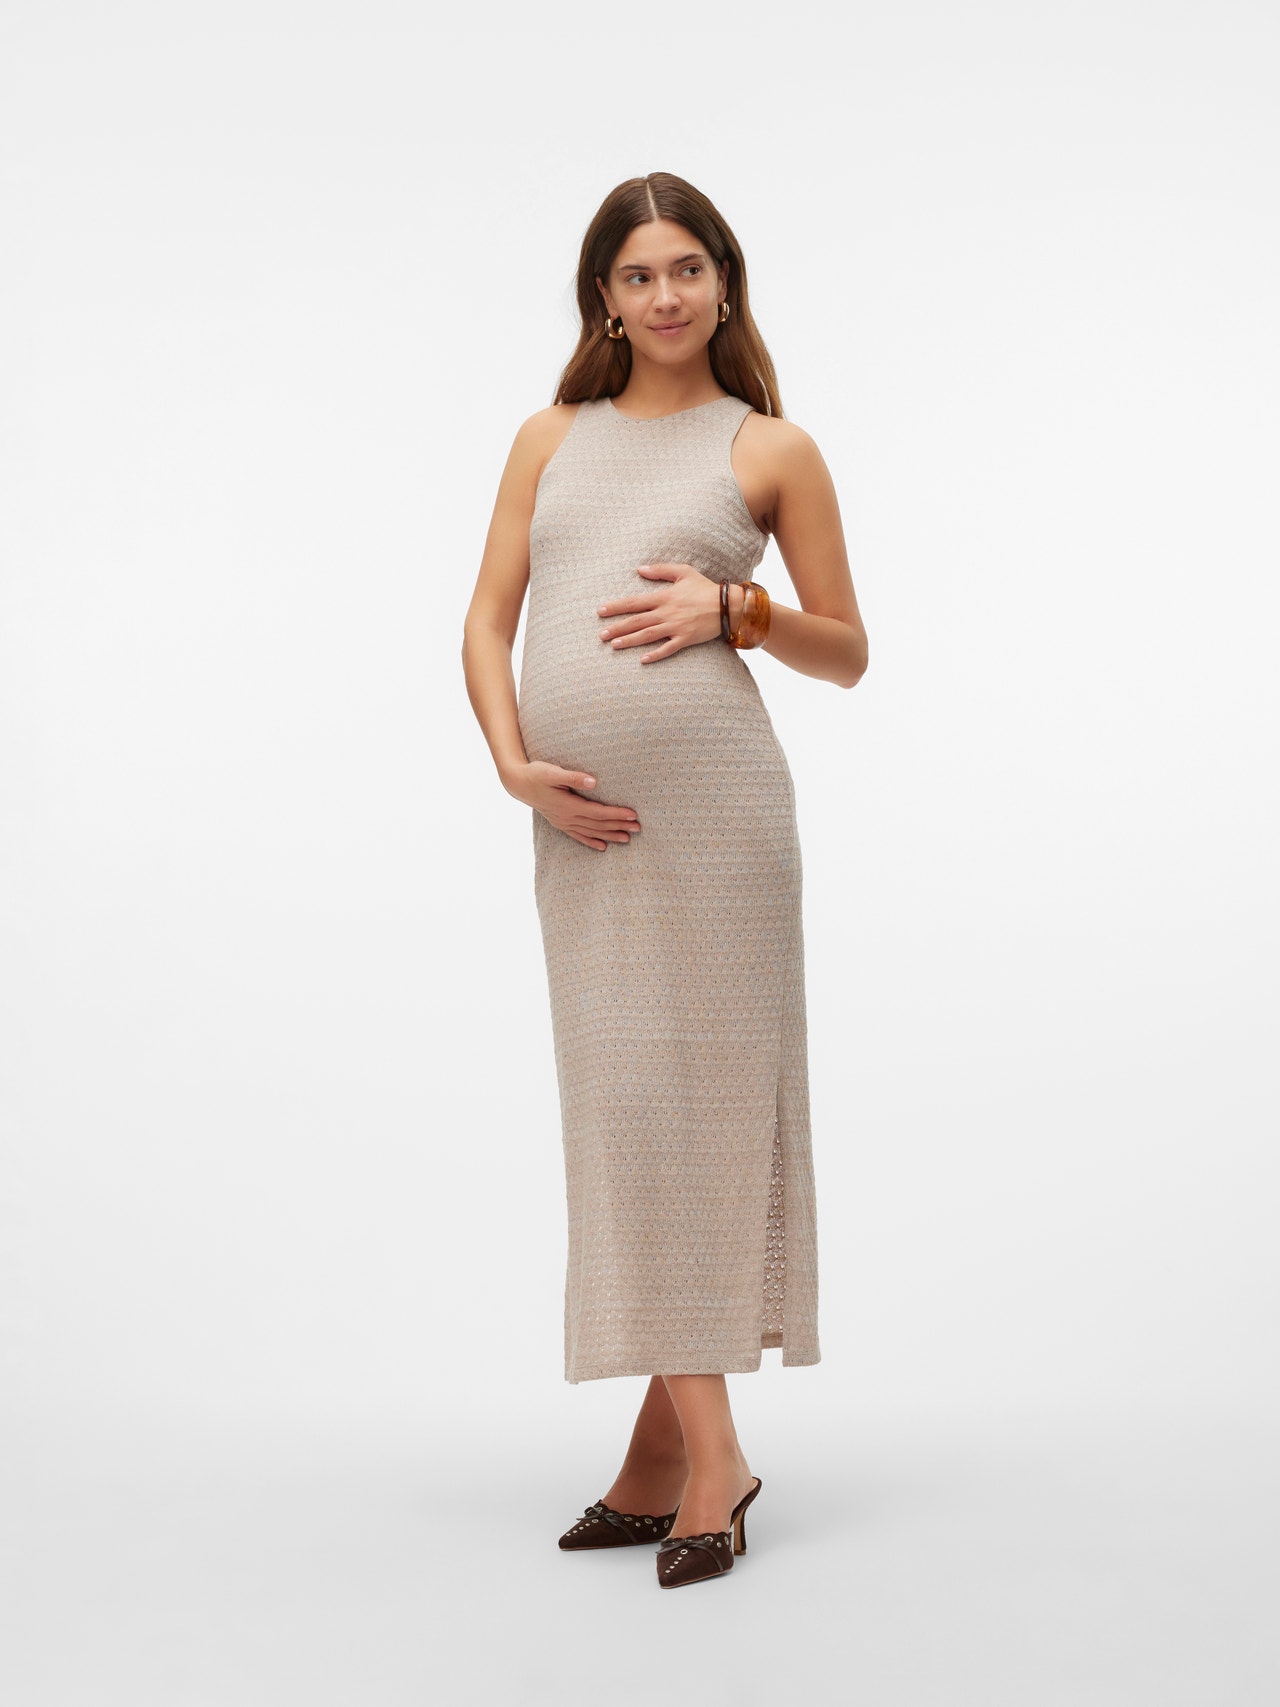 MAMA.LICIOUS Maternity-dress -French Oak - 20020427